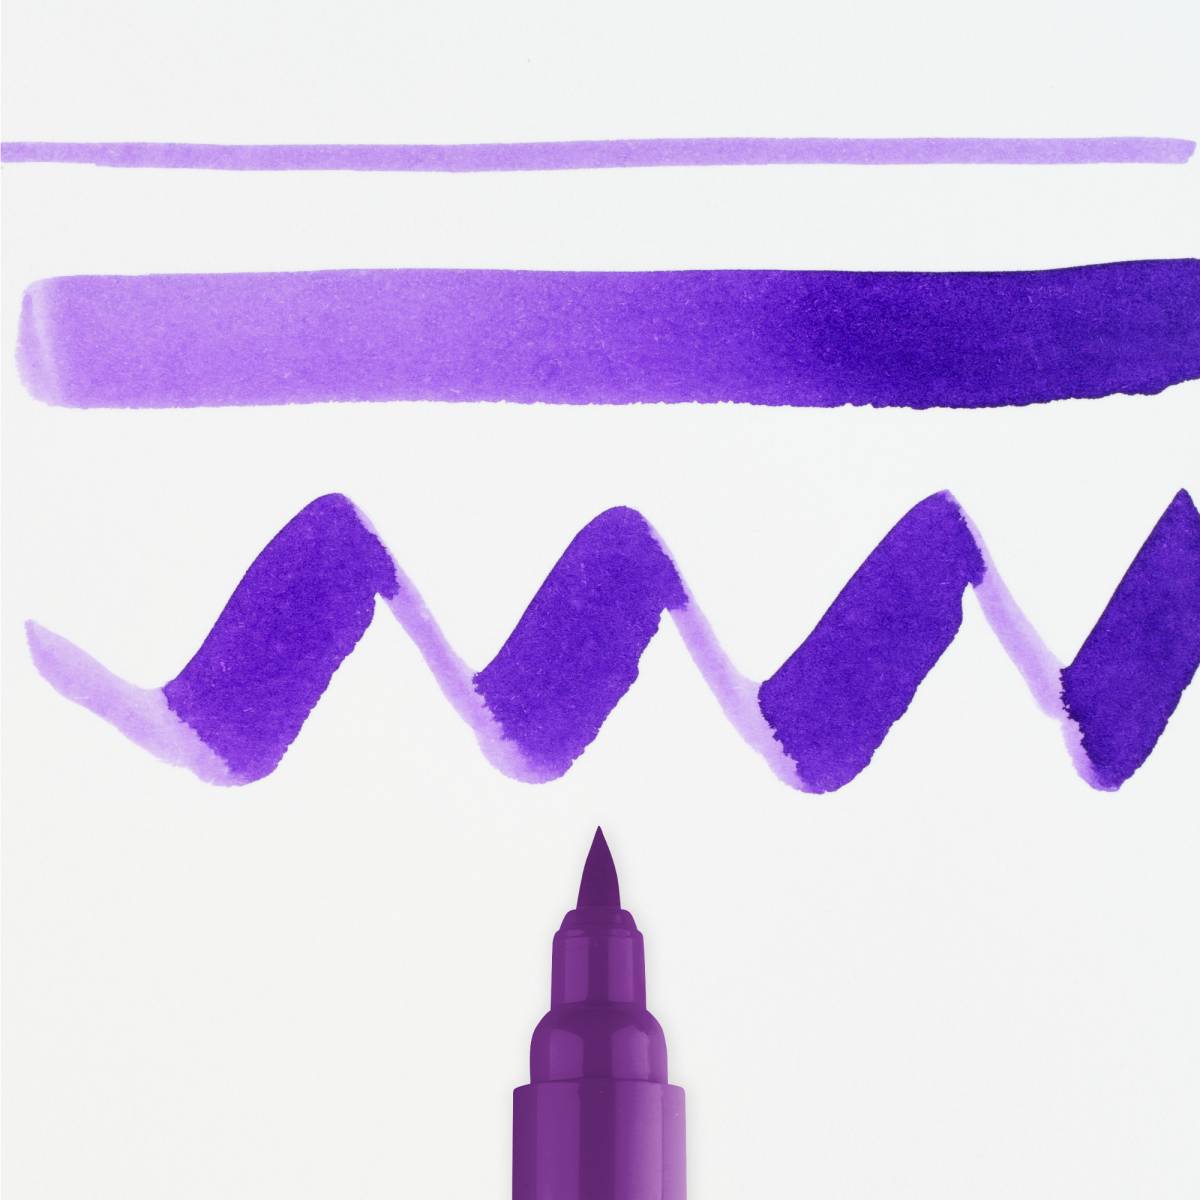 548 Blue violet